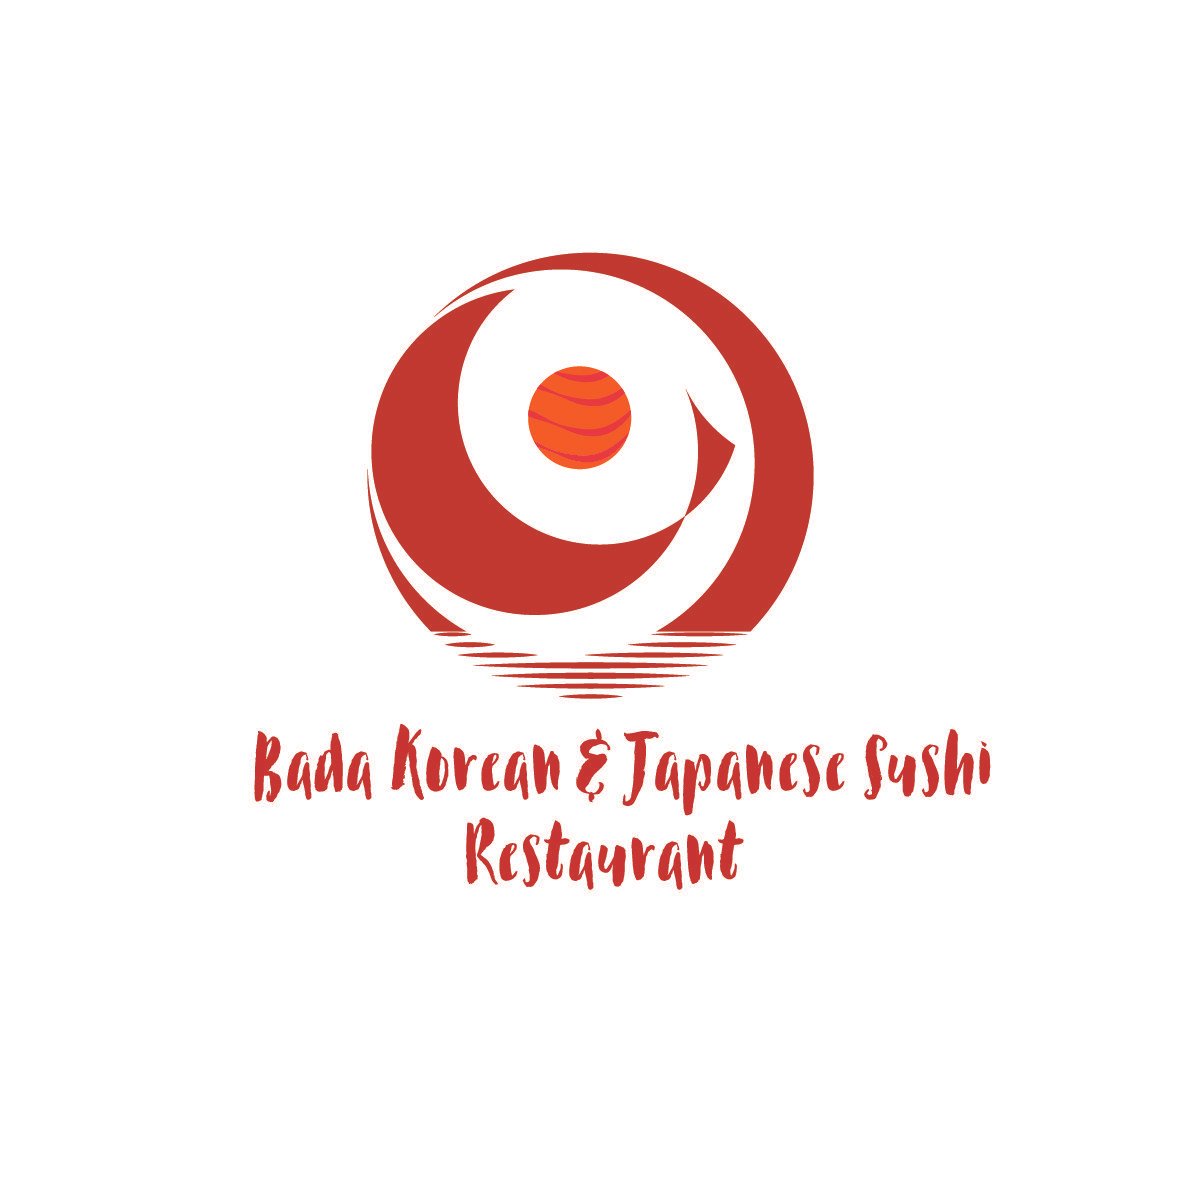 Red Korean Company Logo - Elegant, Playful, Restaurant Logo Design for Bada Story Korean ...